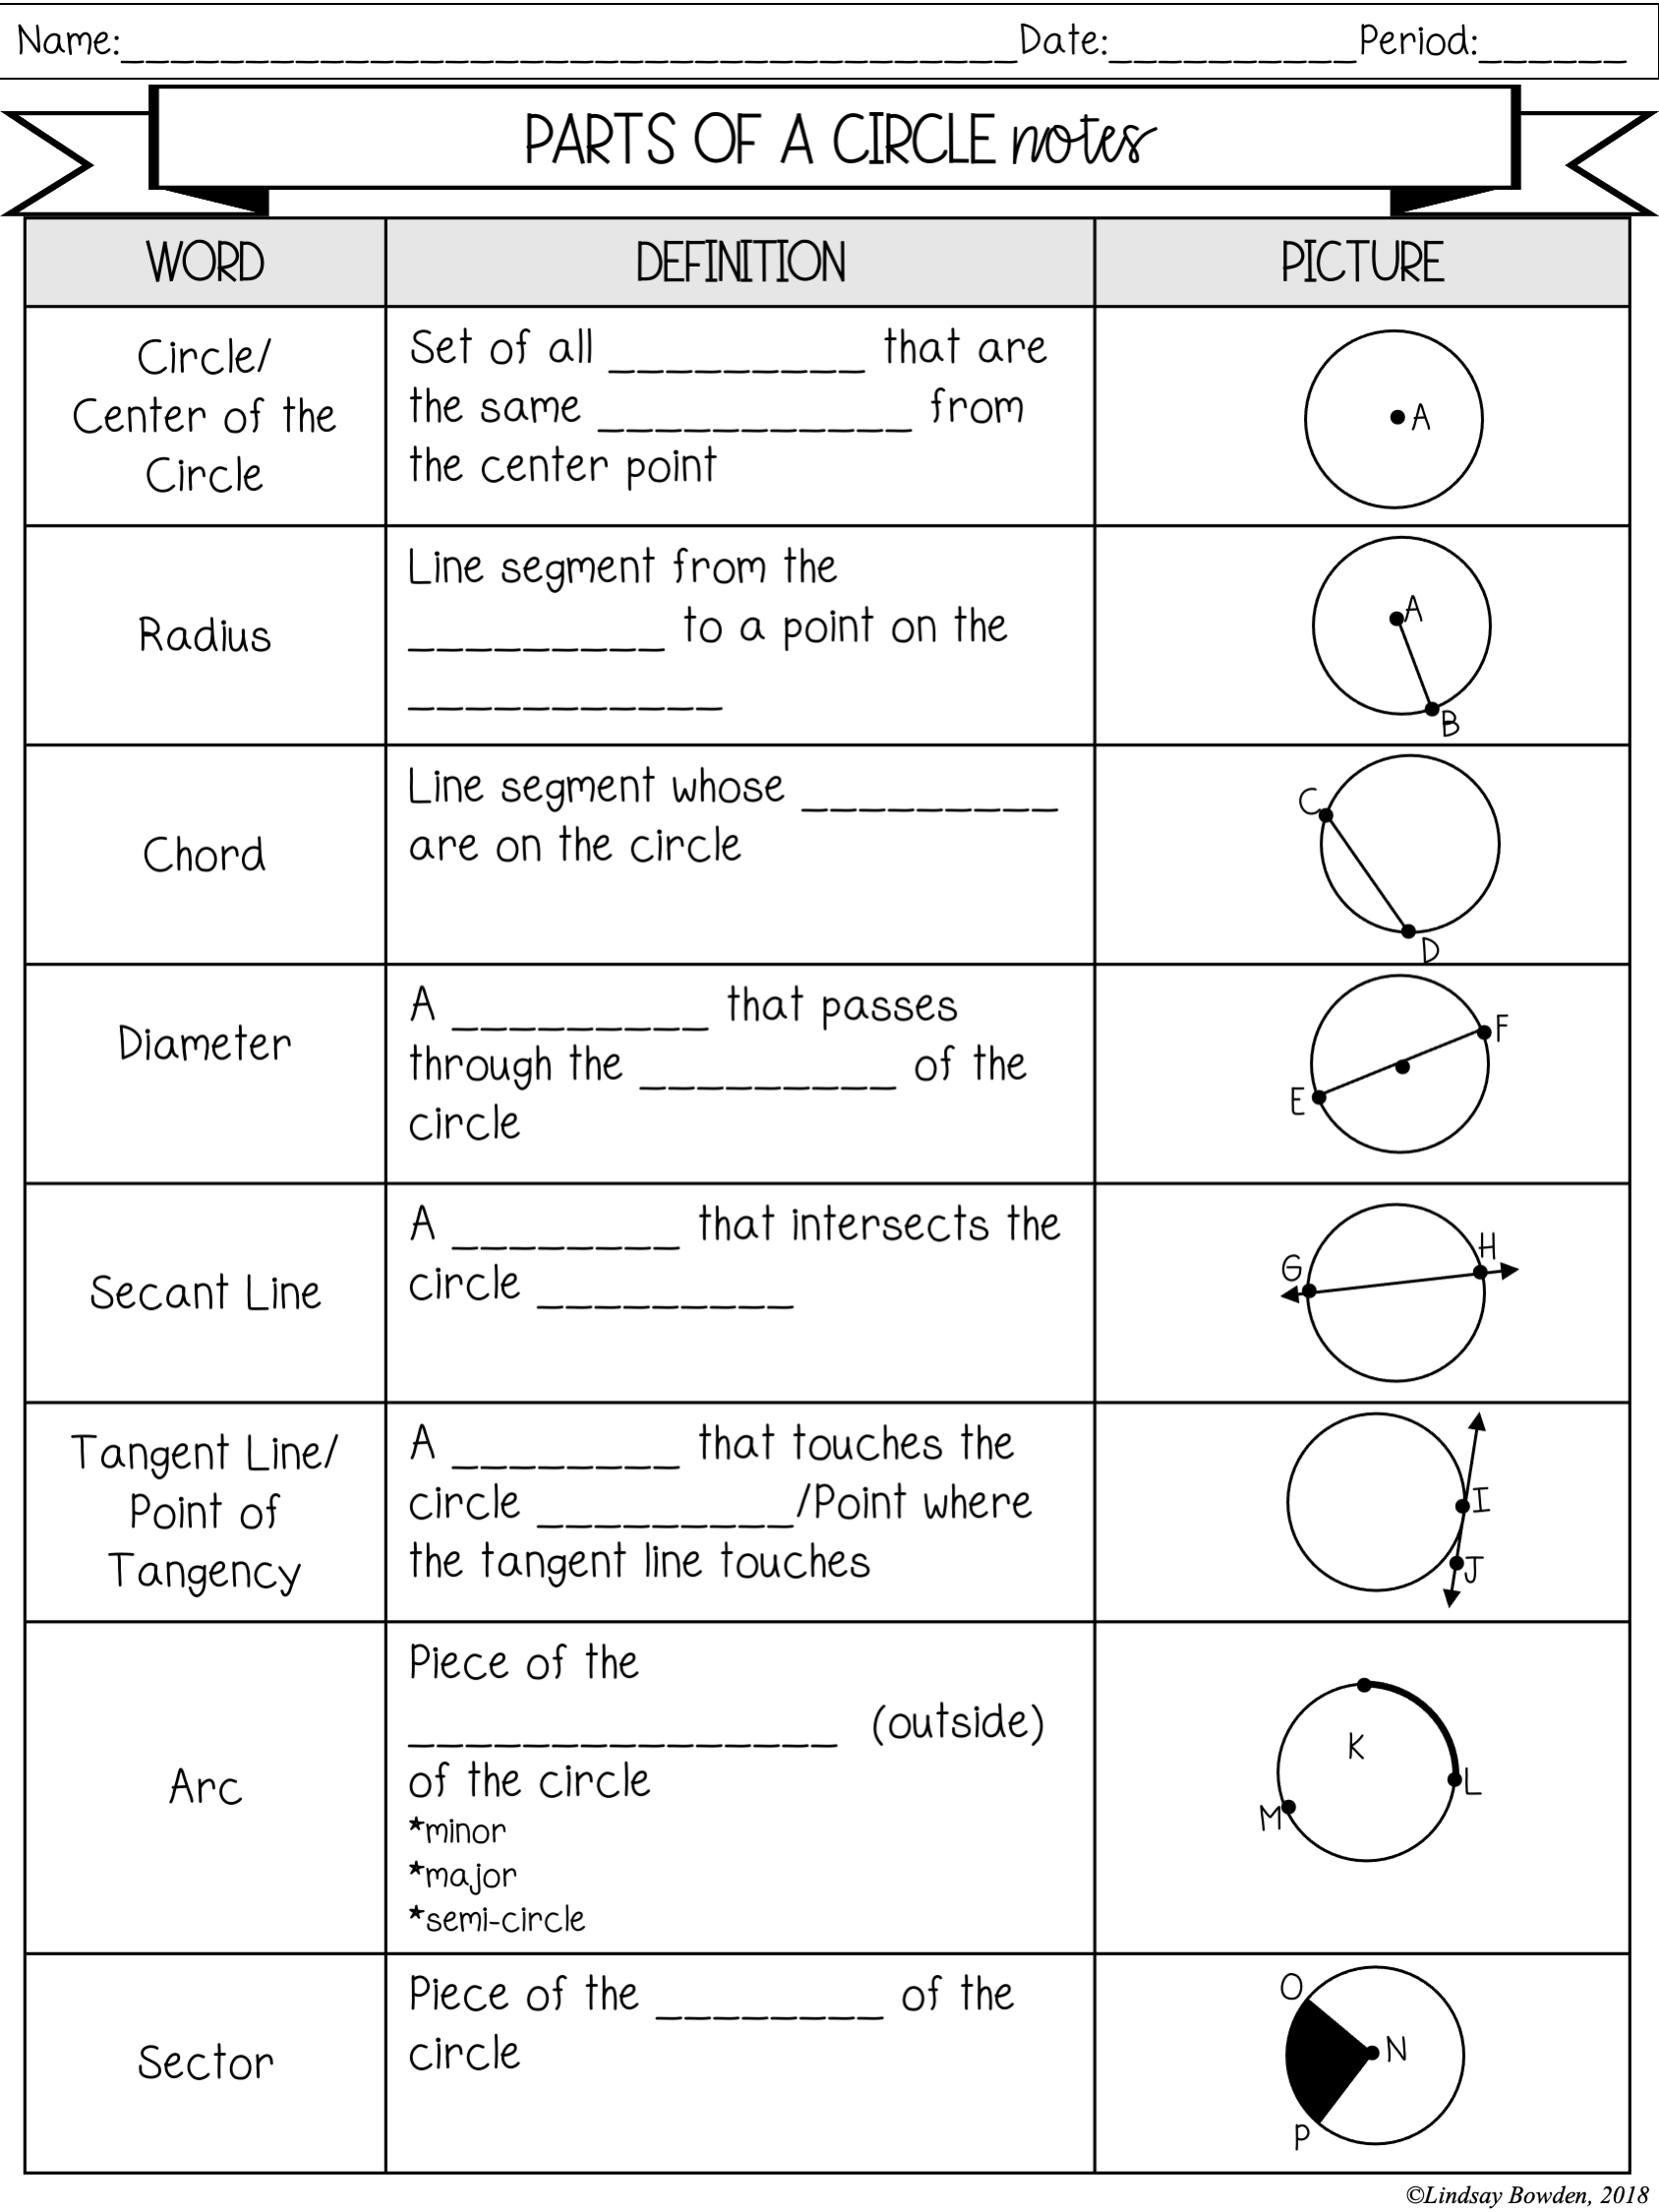 Circles Notes and Worksheets - Lindsay Bowden